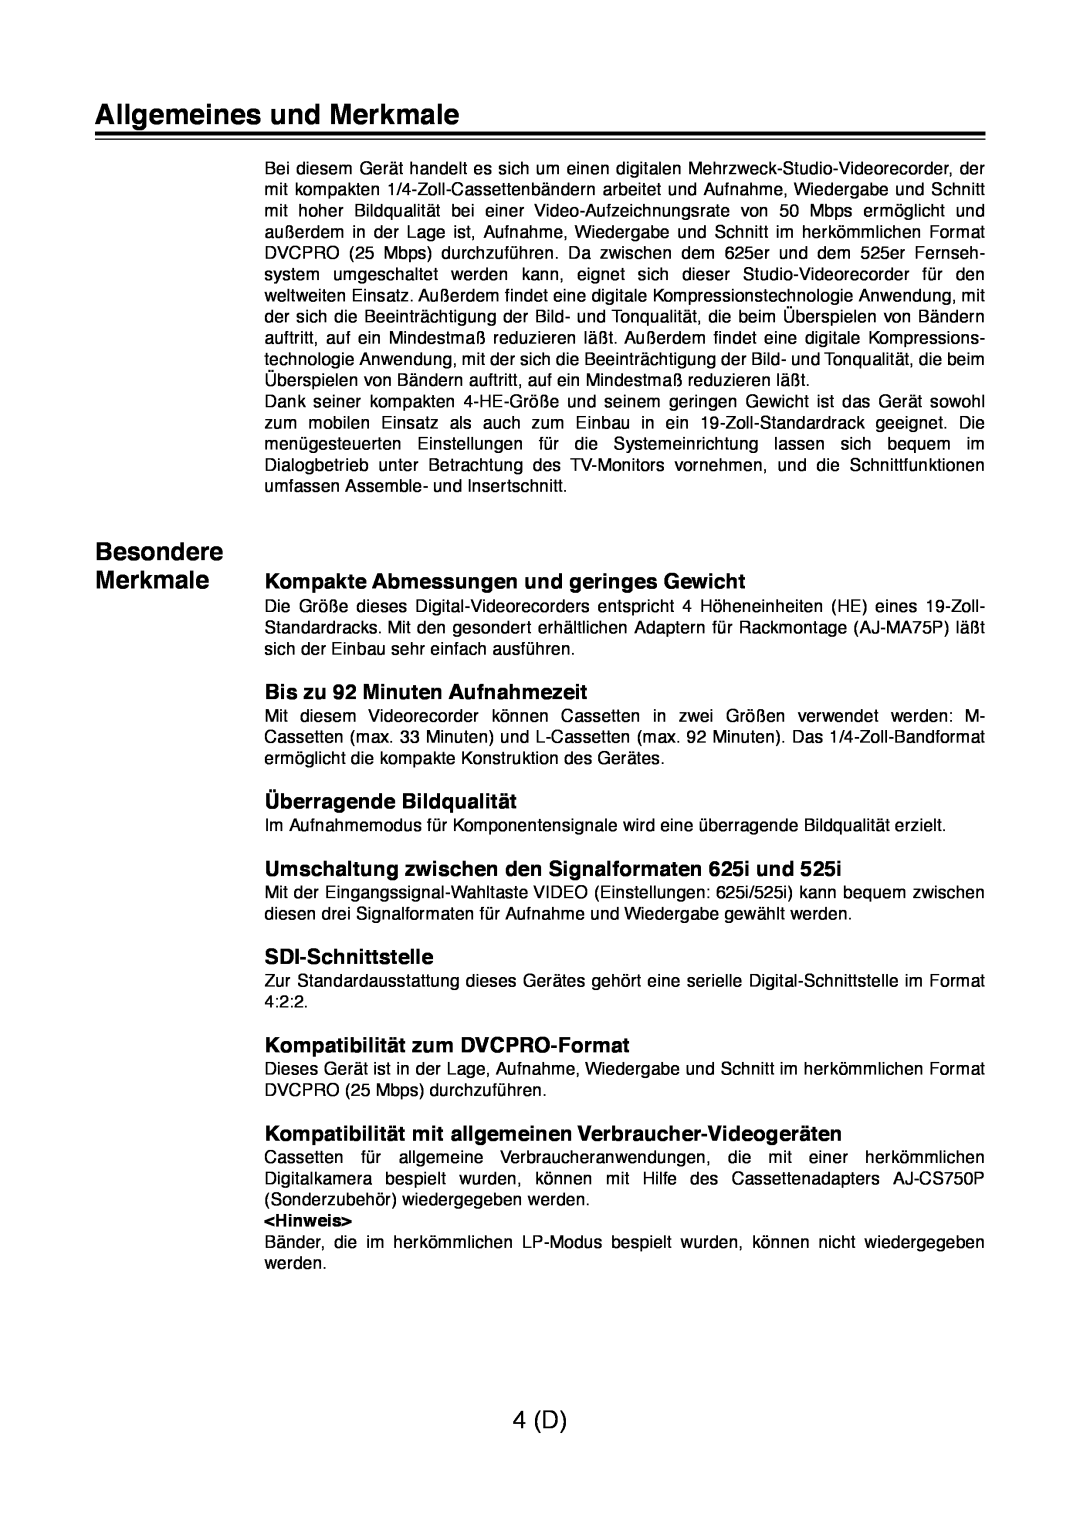 Panasonic AJ-D960 Allgemeines und Merkmale, Besondere, Merkmale Kompakte Abmessungen und geringes Gewicht, Hinweis 